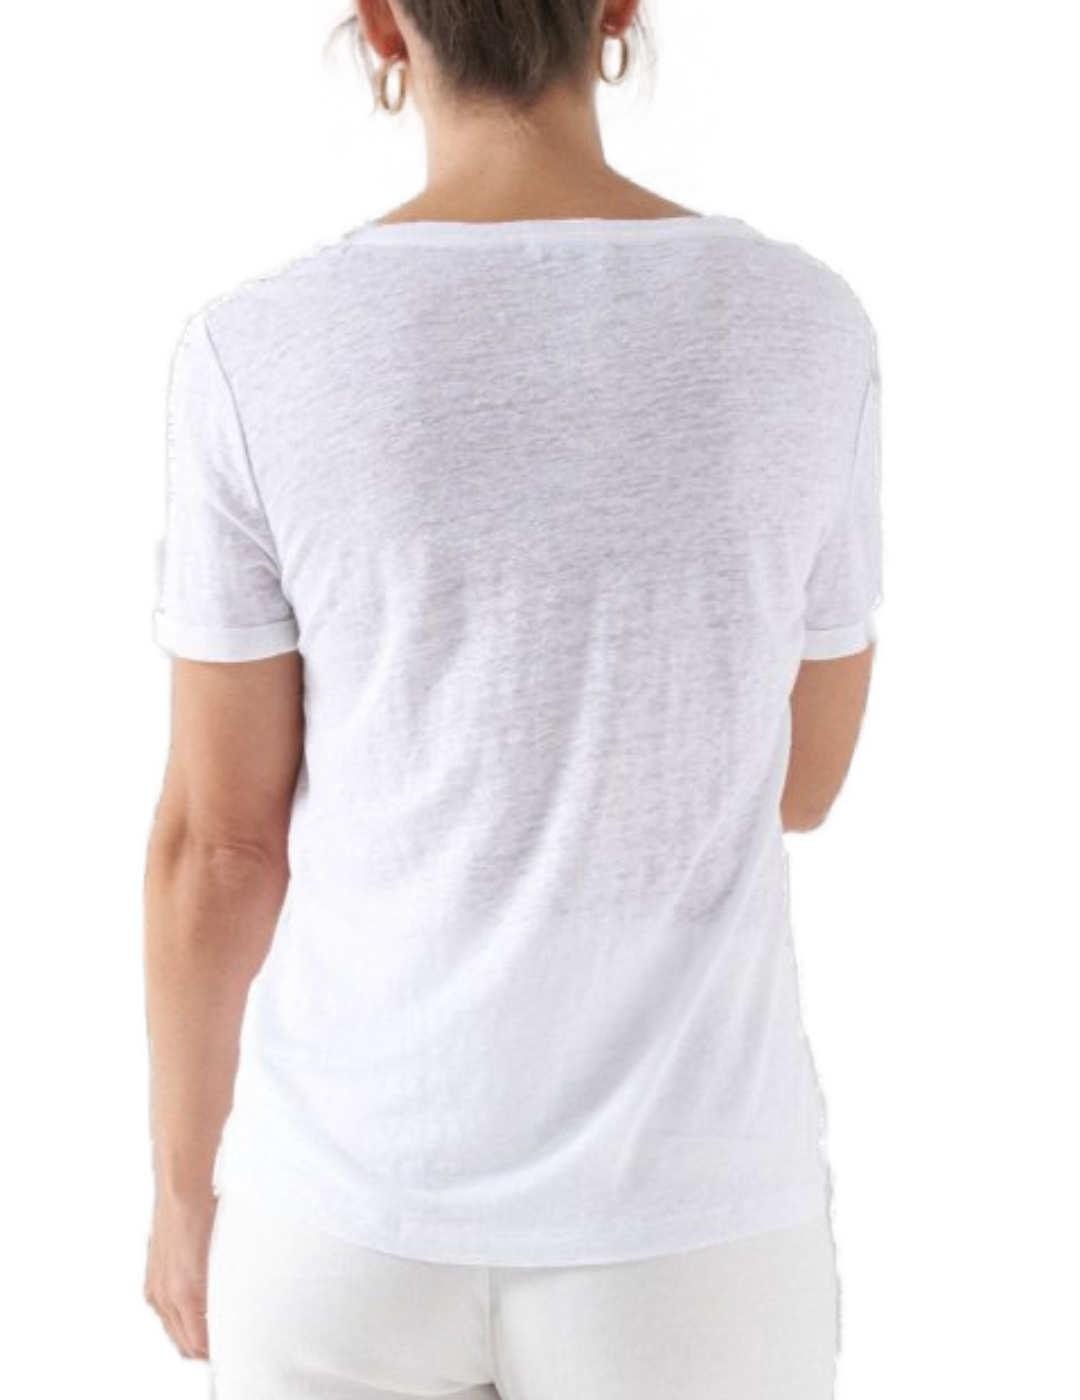 Camiseta Salsa blanca lino manga corta para mujer